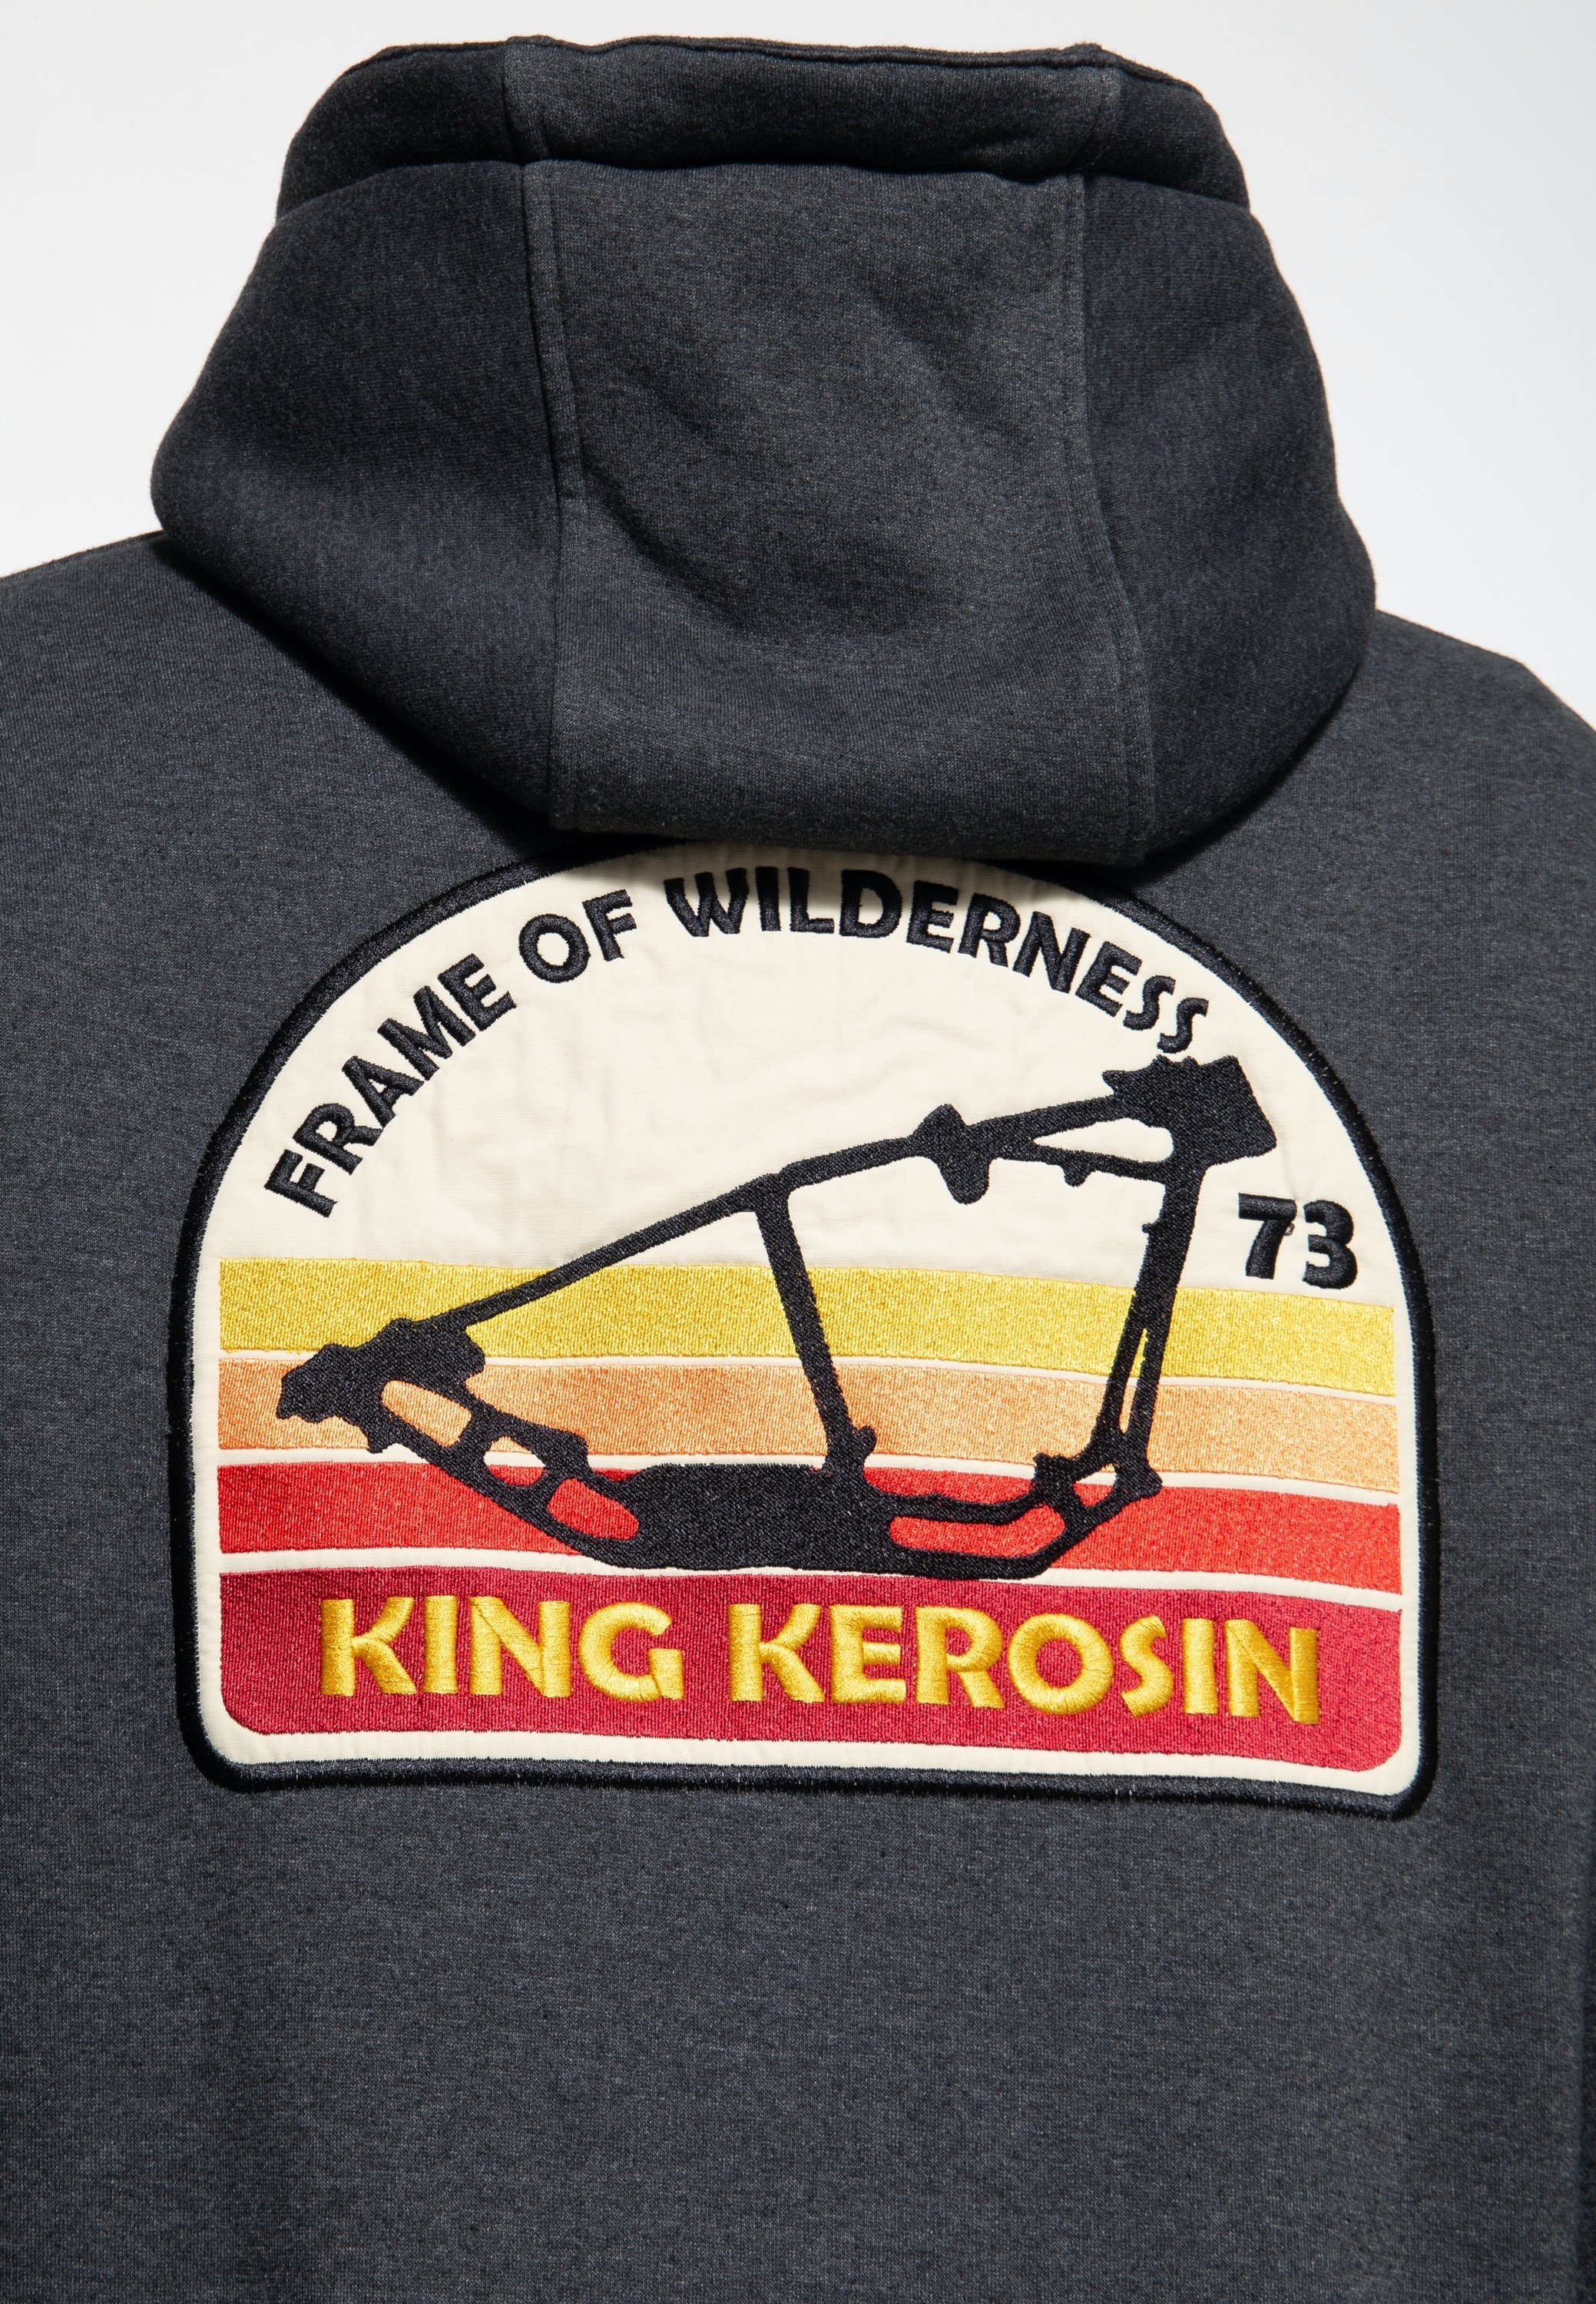 K.K. KingKerosin Adventure Wilderness mit of - Kapuzensweatjacke Softshell-Innenfutter Gear Frame herausnehmbarem